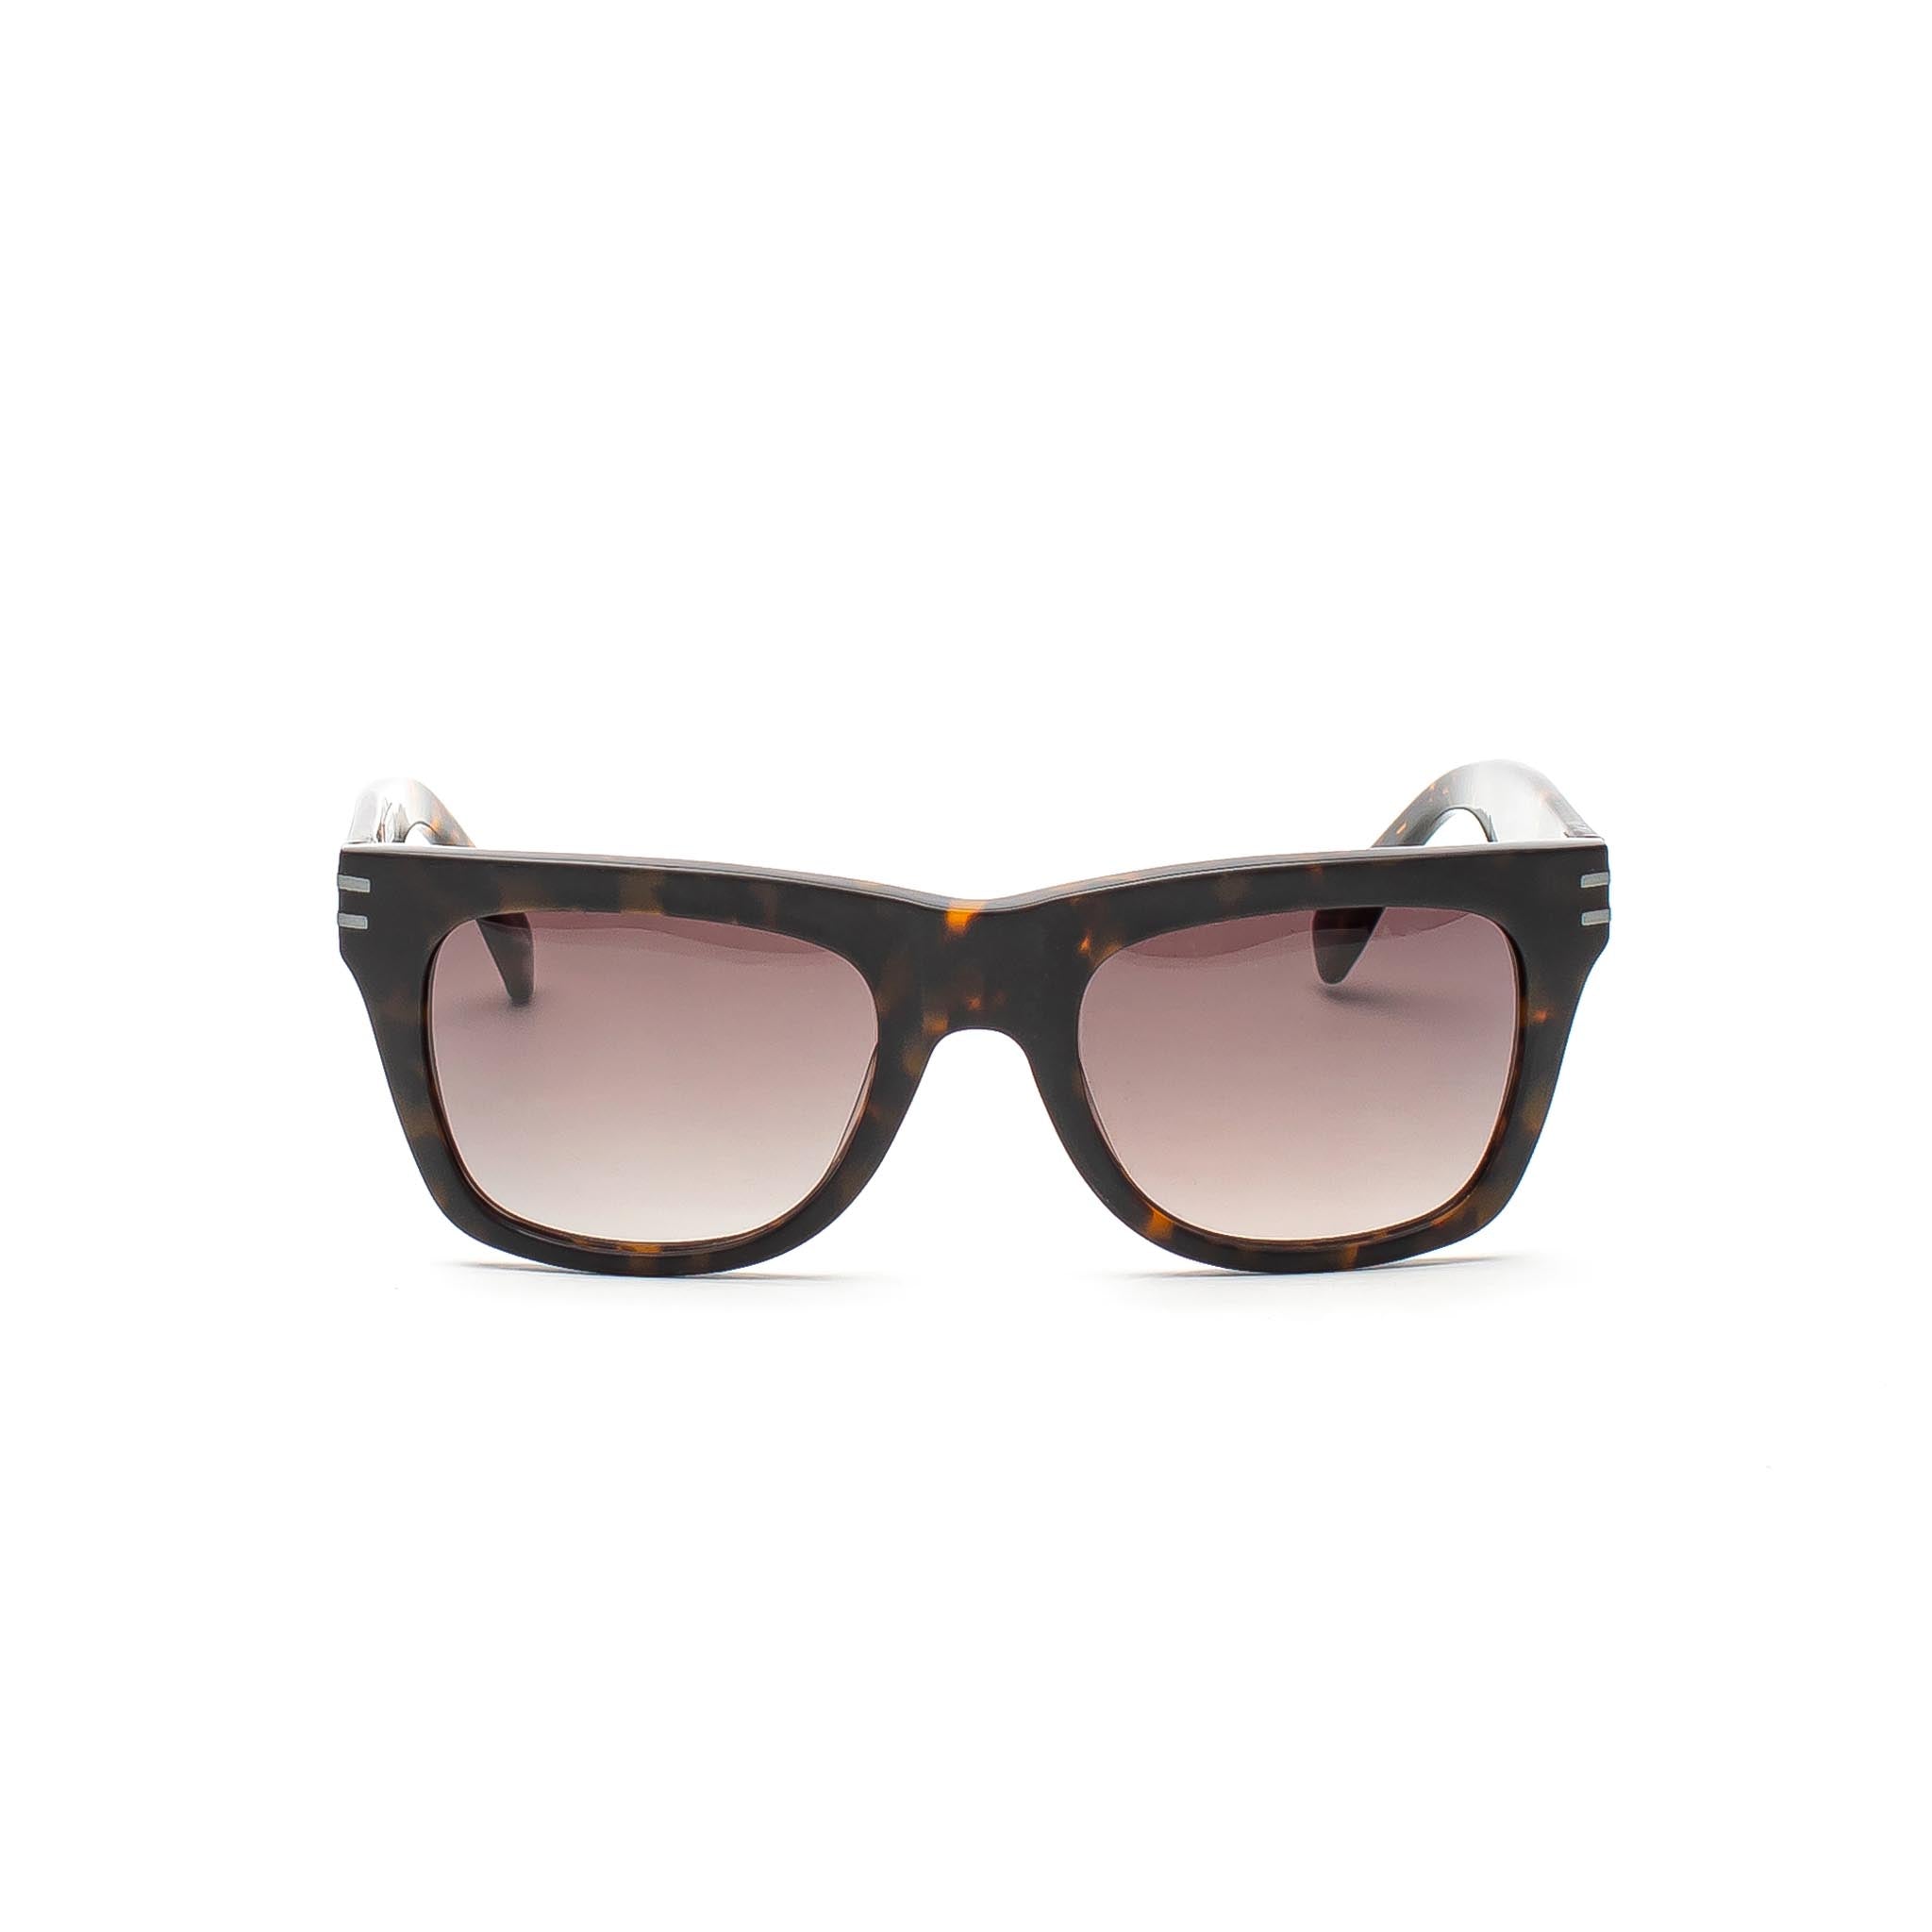 HOMME+ HP001 Sunglasses Tortoise